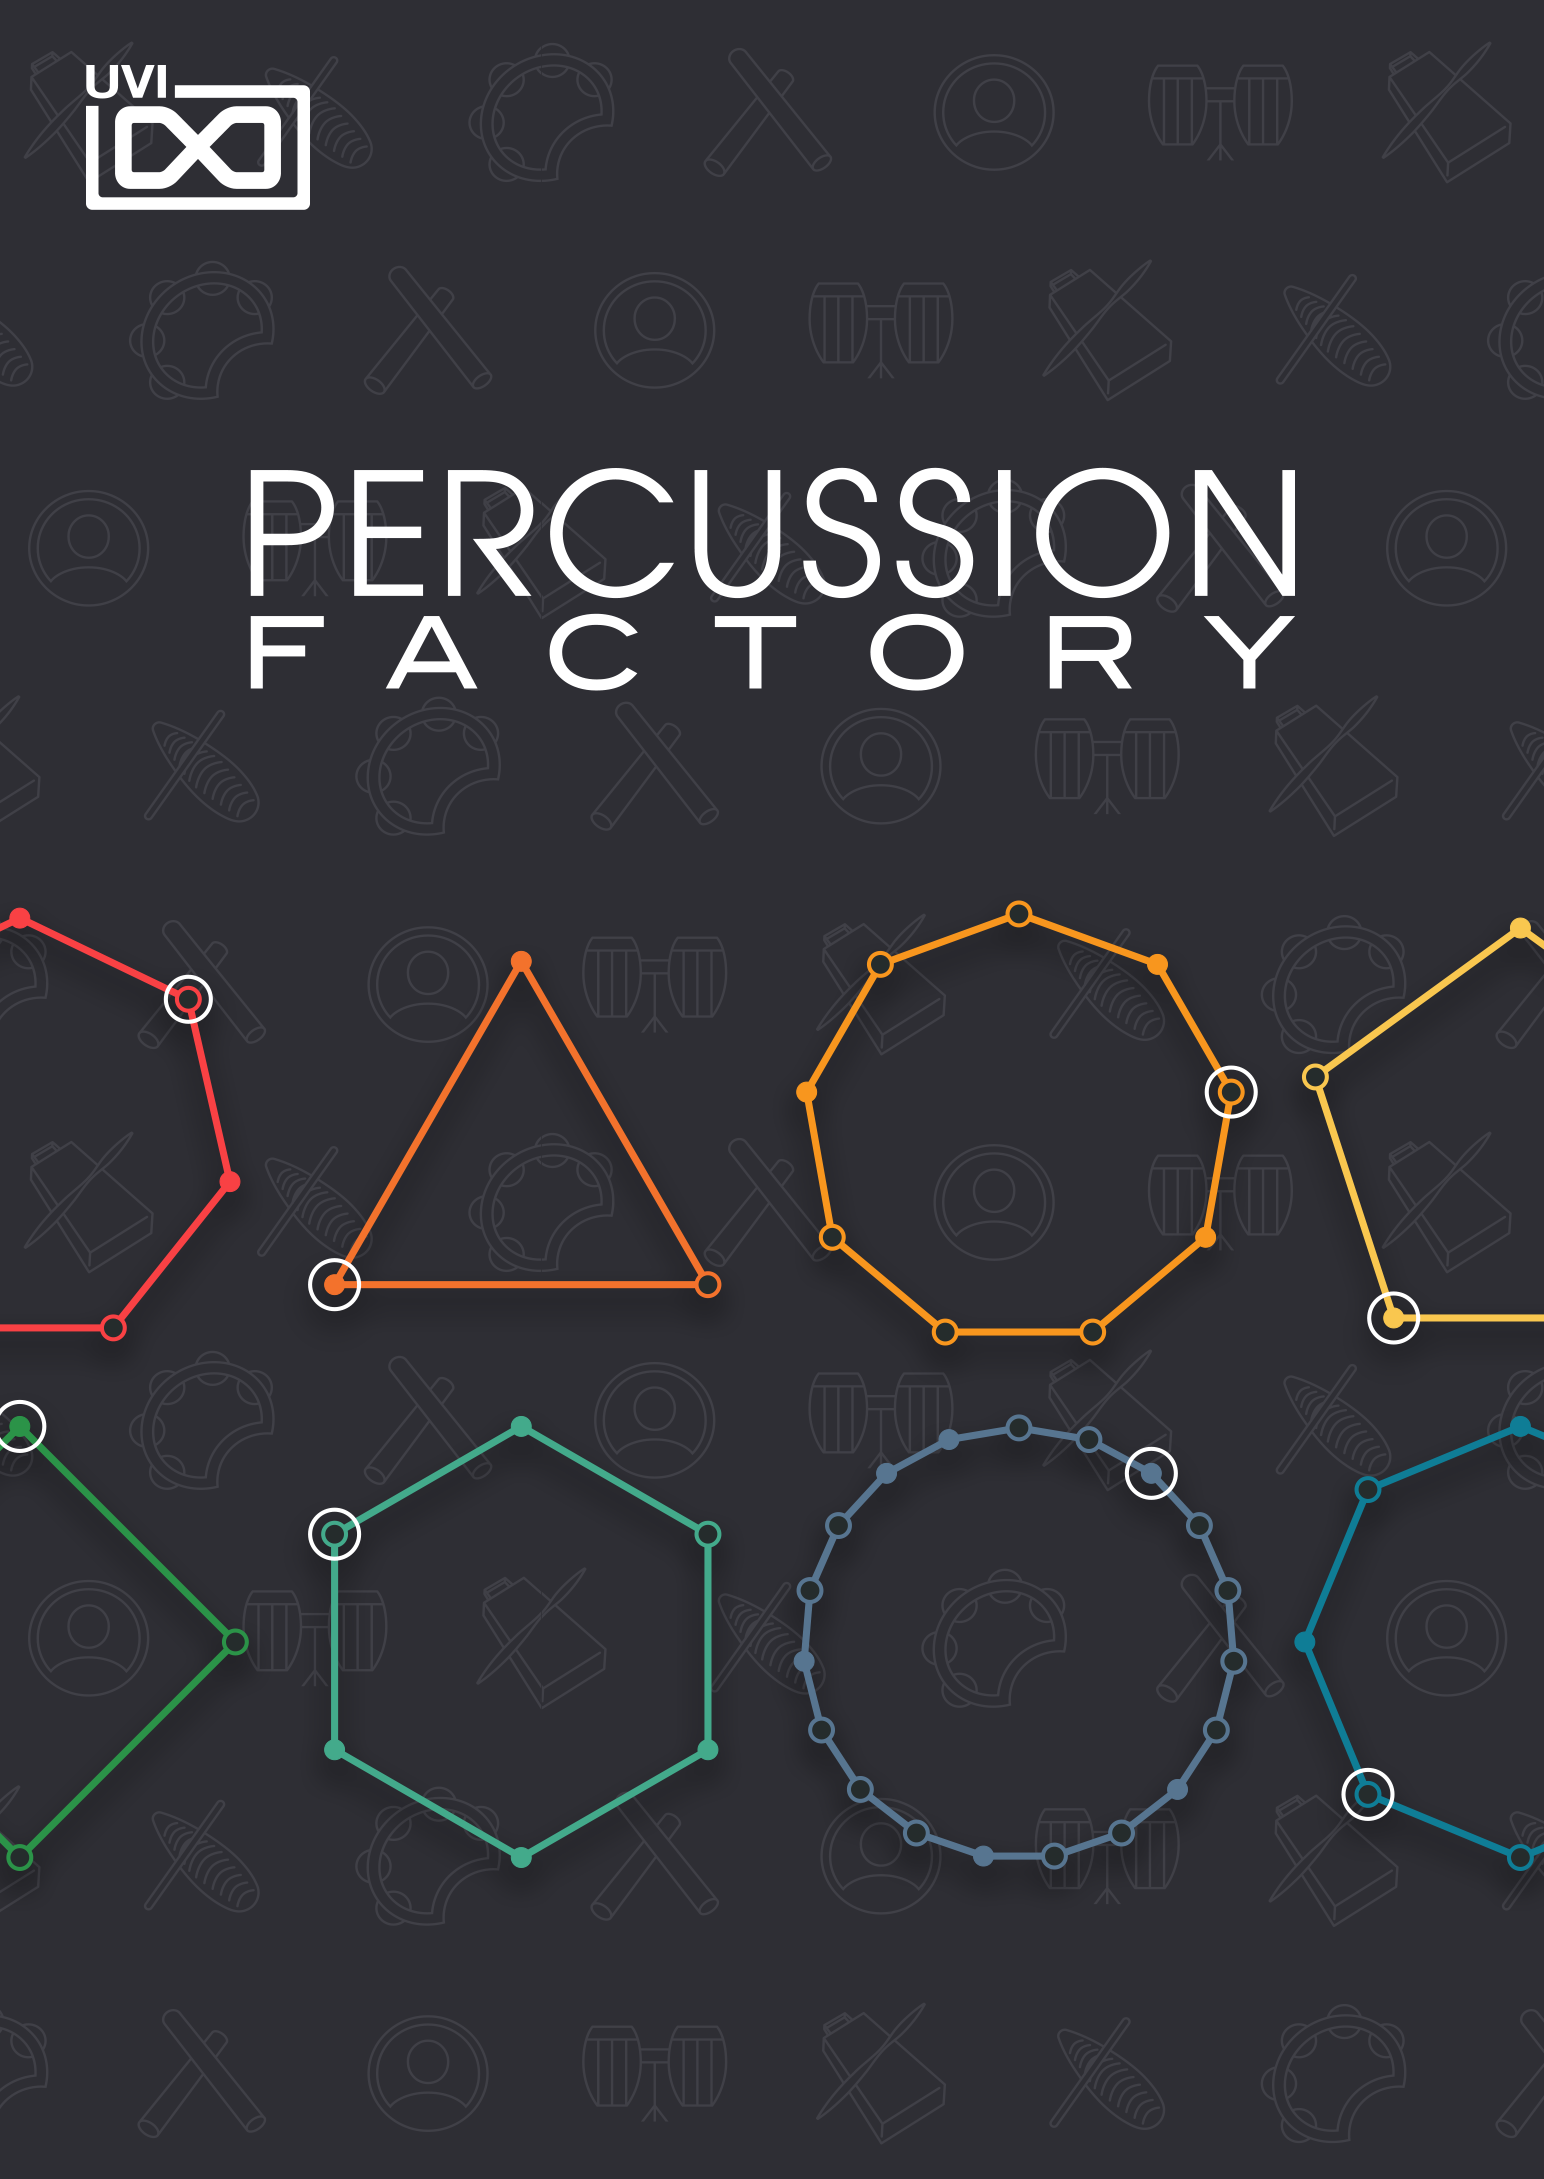 UVI Percussion Factory